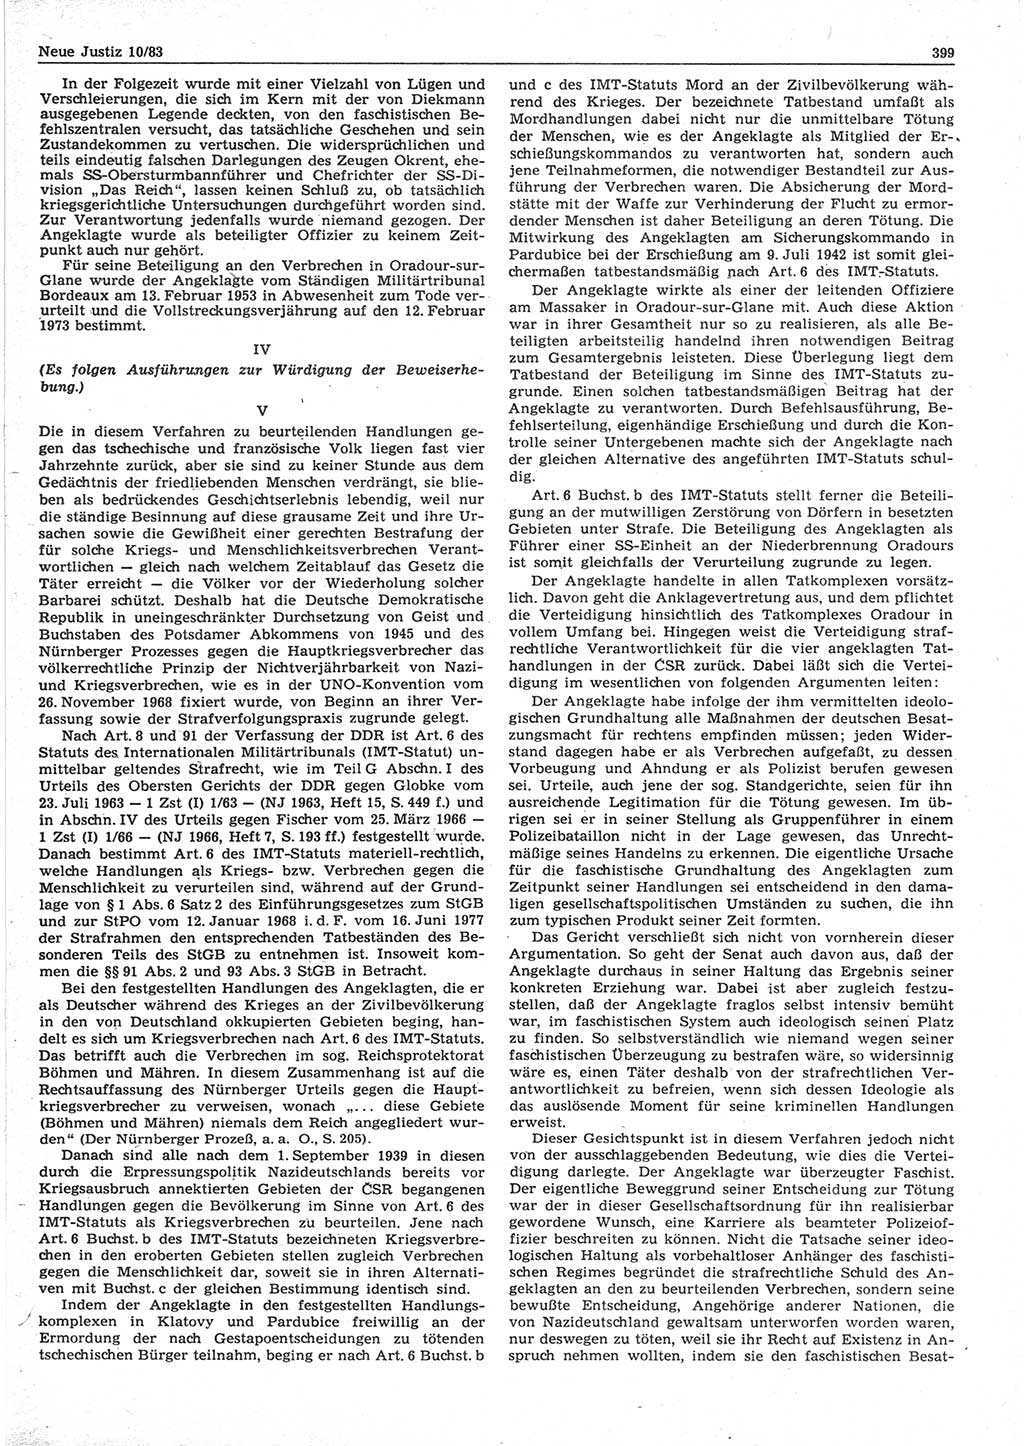 Neue Justiz (NJ), Zeitschrift für sozialistisches Recht und Gesetzlichkeit [Deutsche Demokratische Republik (DDR)], 37. Jahrgang 1983, Seite 399 (NJ DDR 1983, S. 399)